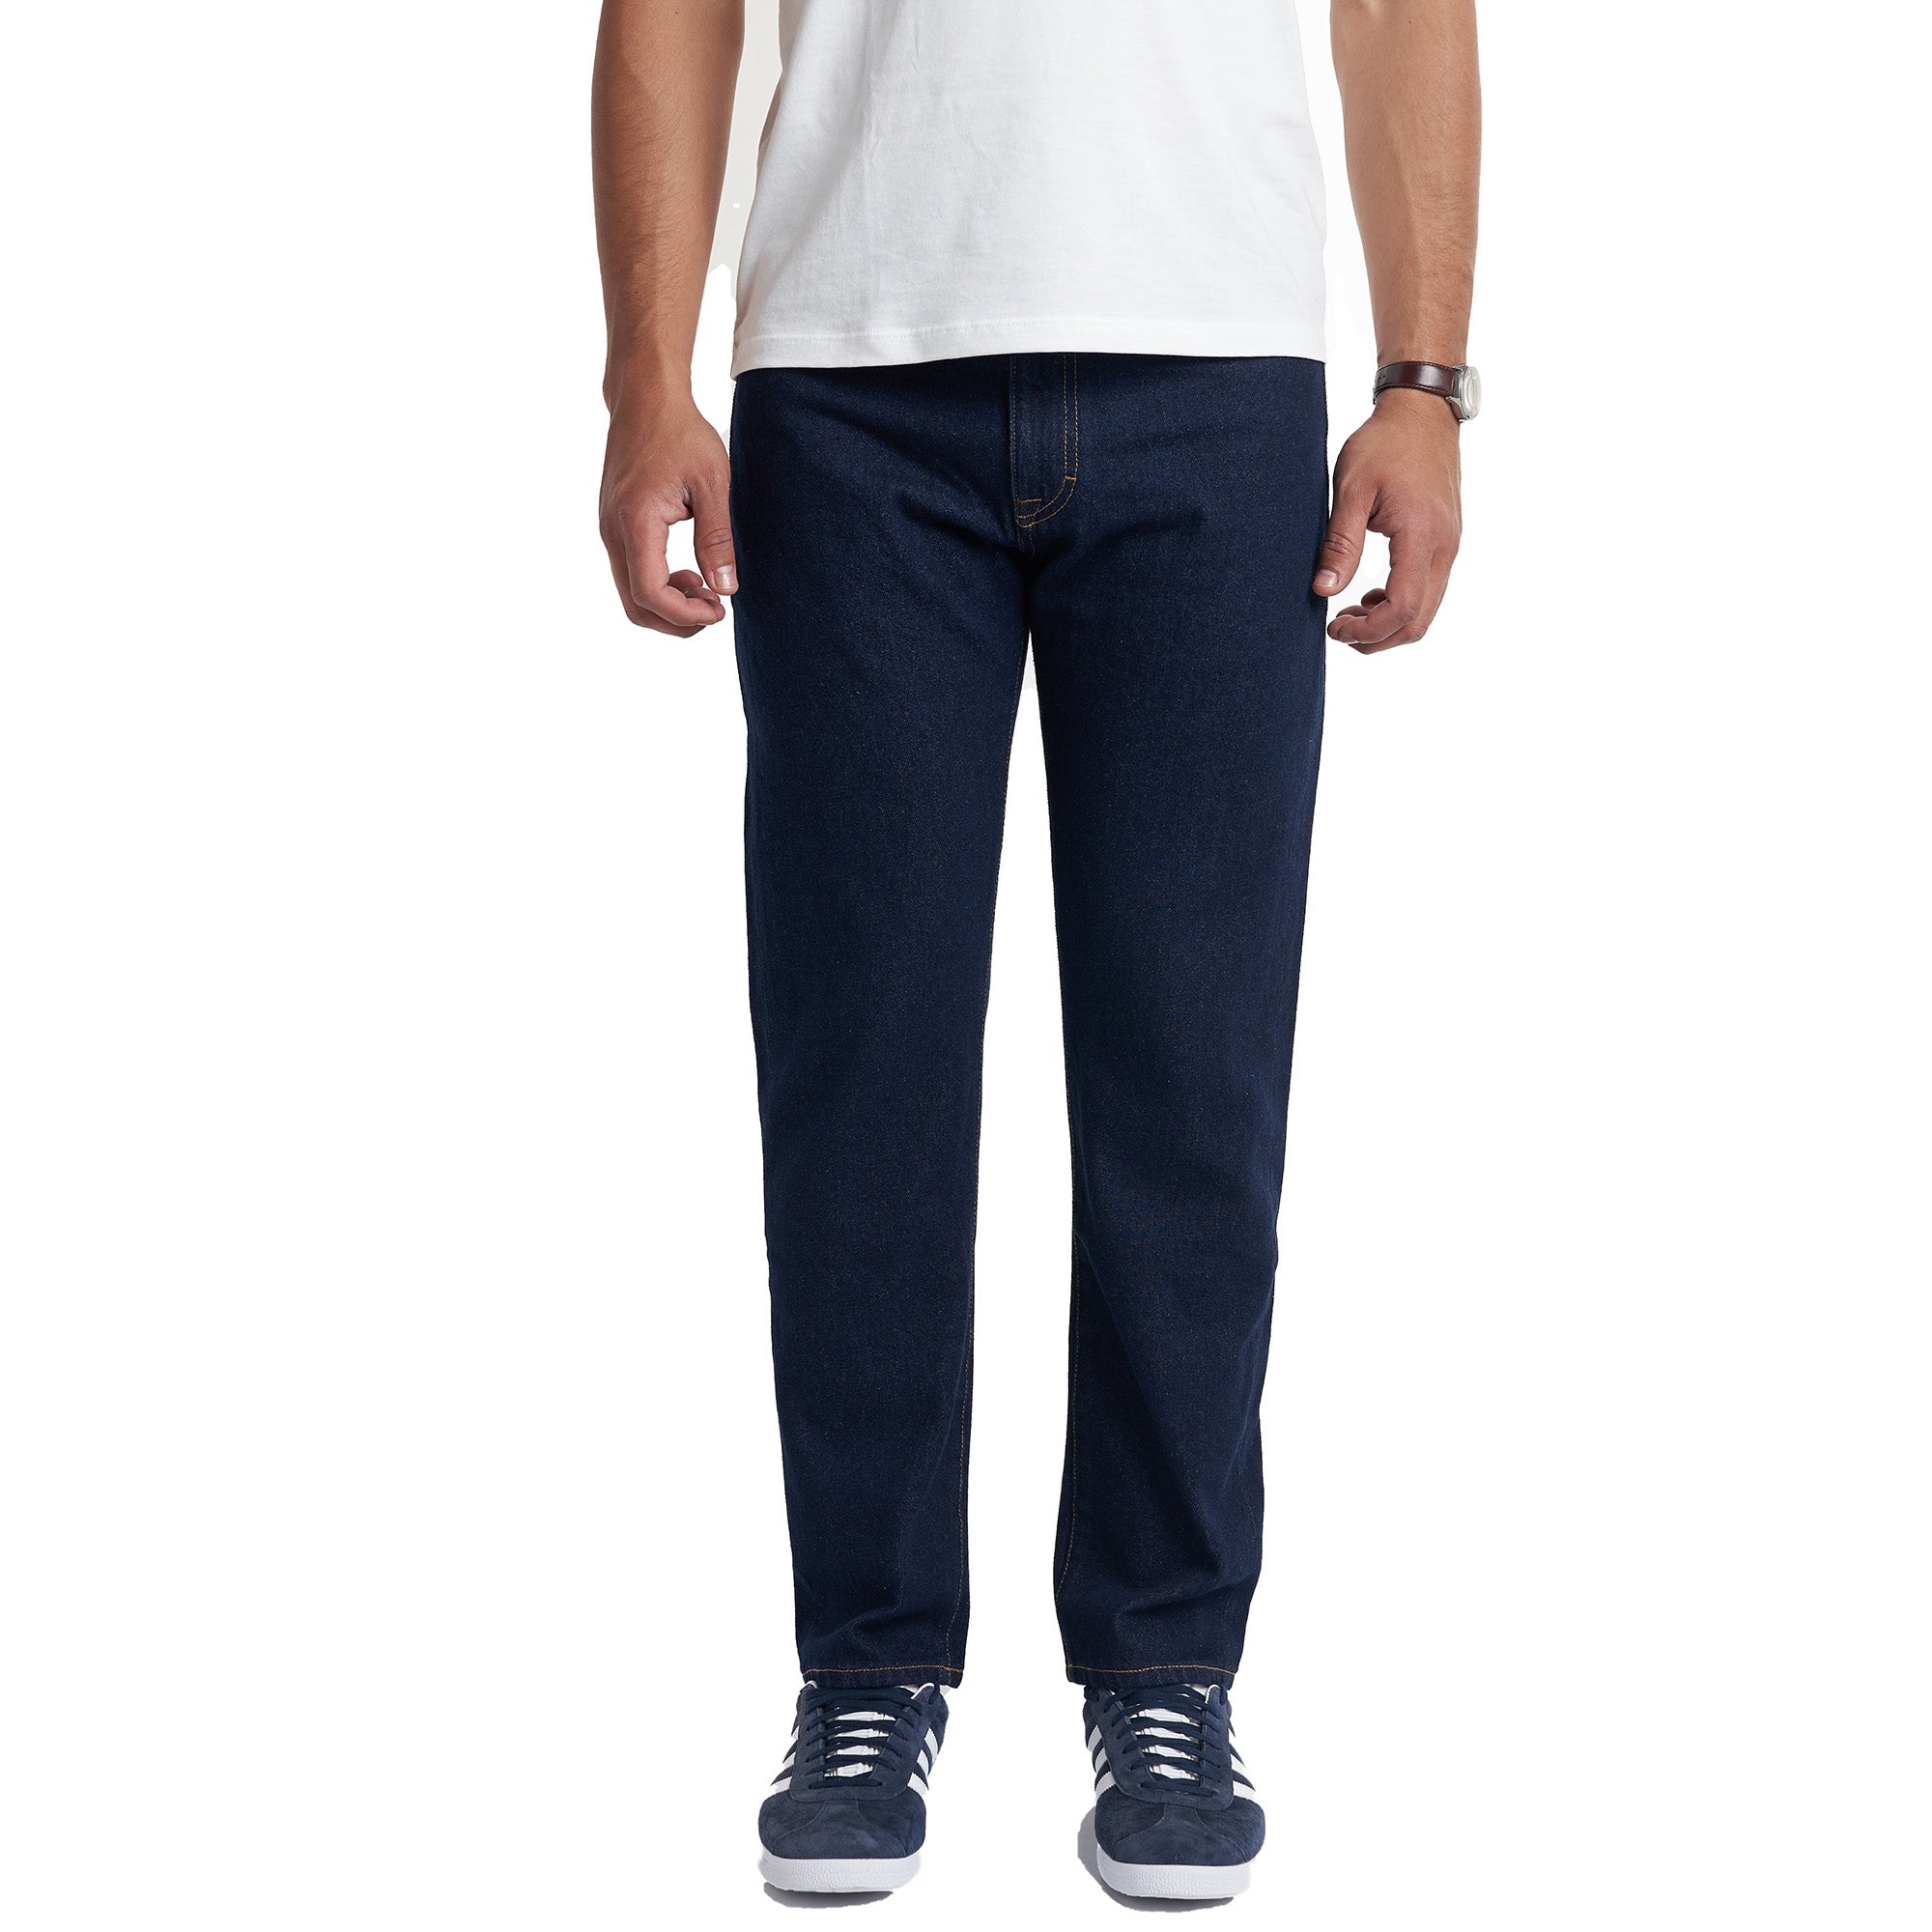 PMNYC Jeans Standard Fit - Dark Indigo Wash